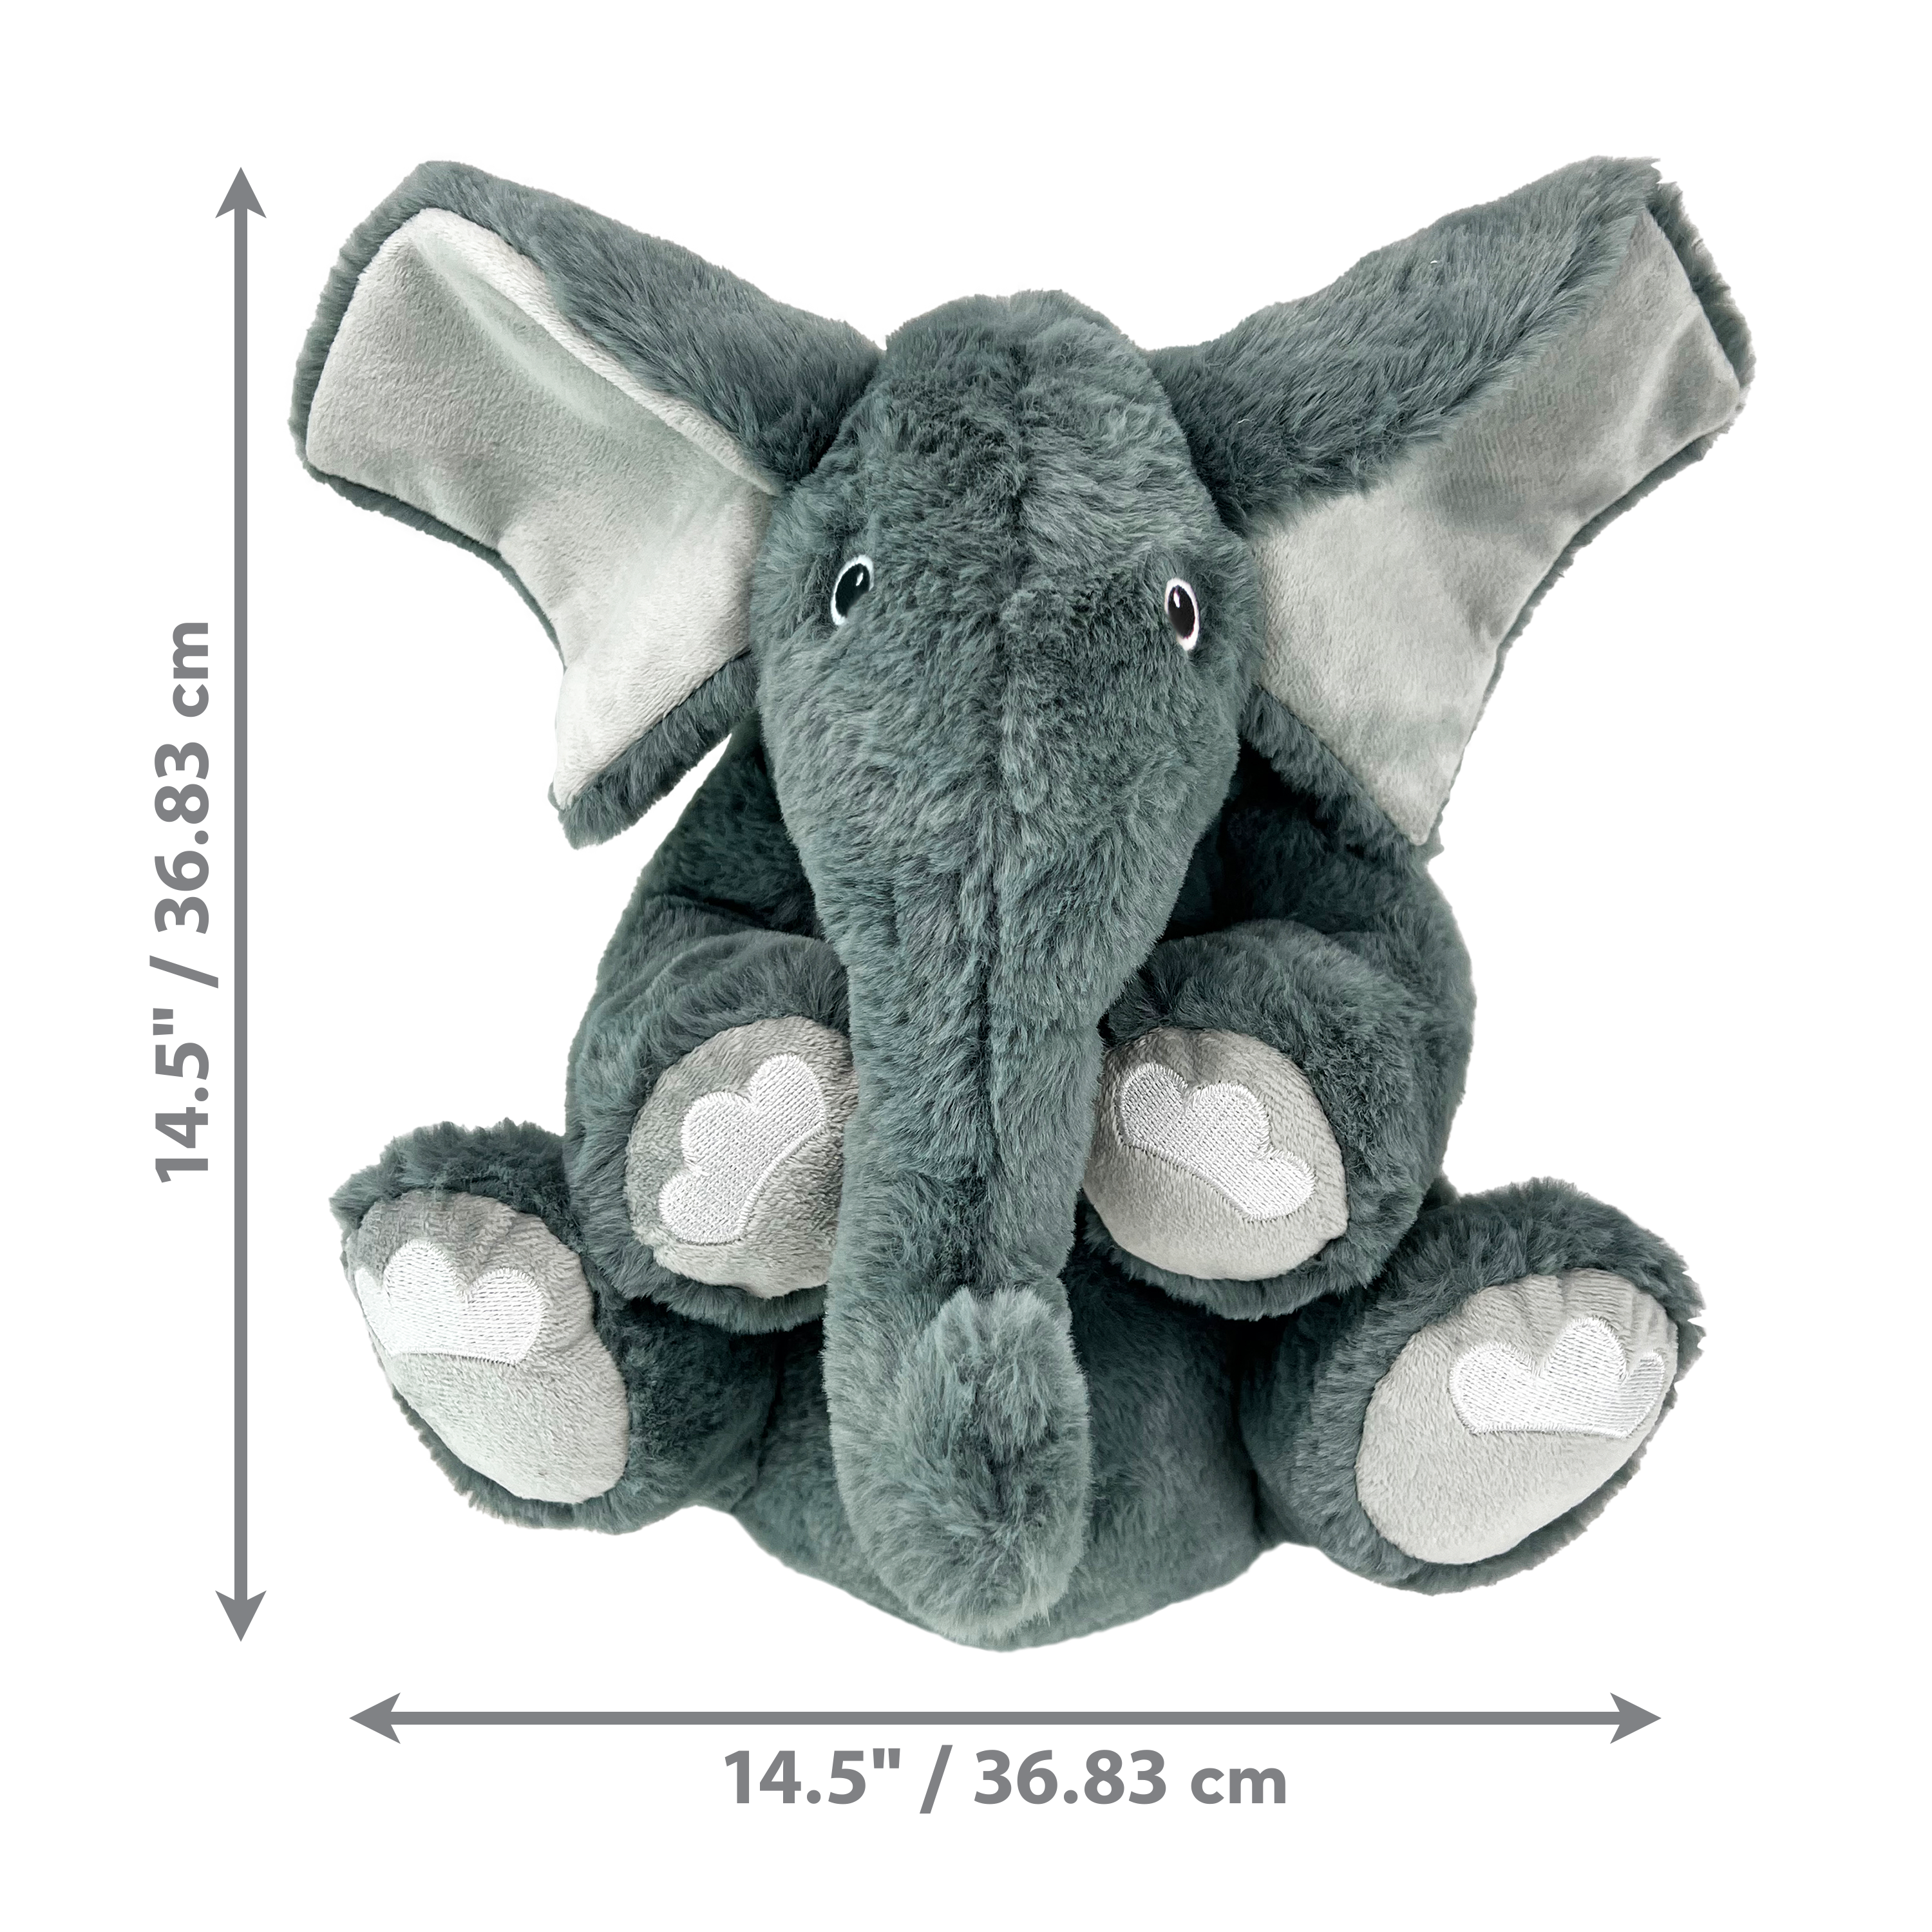 Comfort Kiddos Jumbo Elephant dimoffpack product image